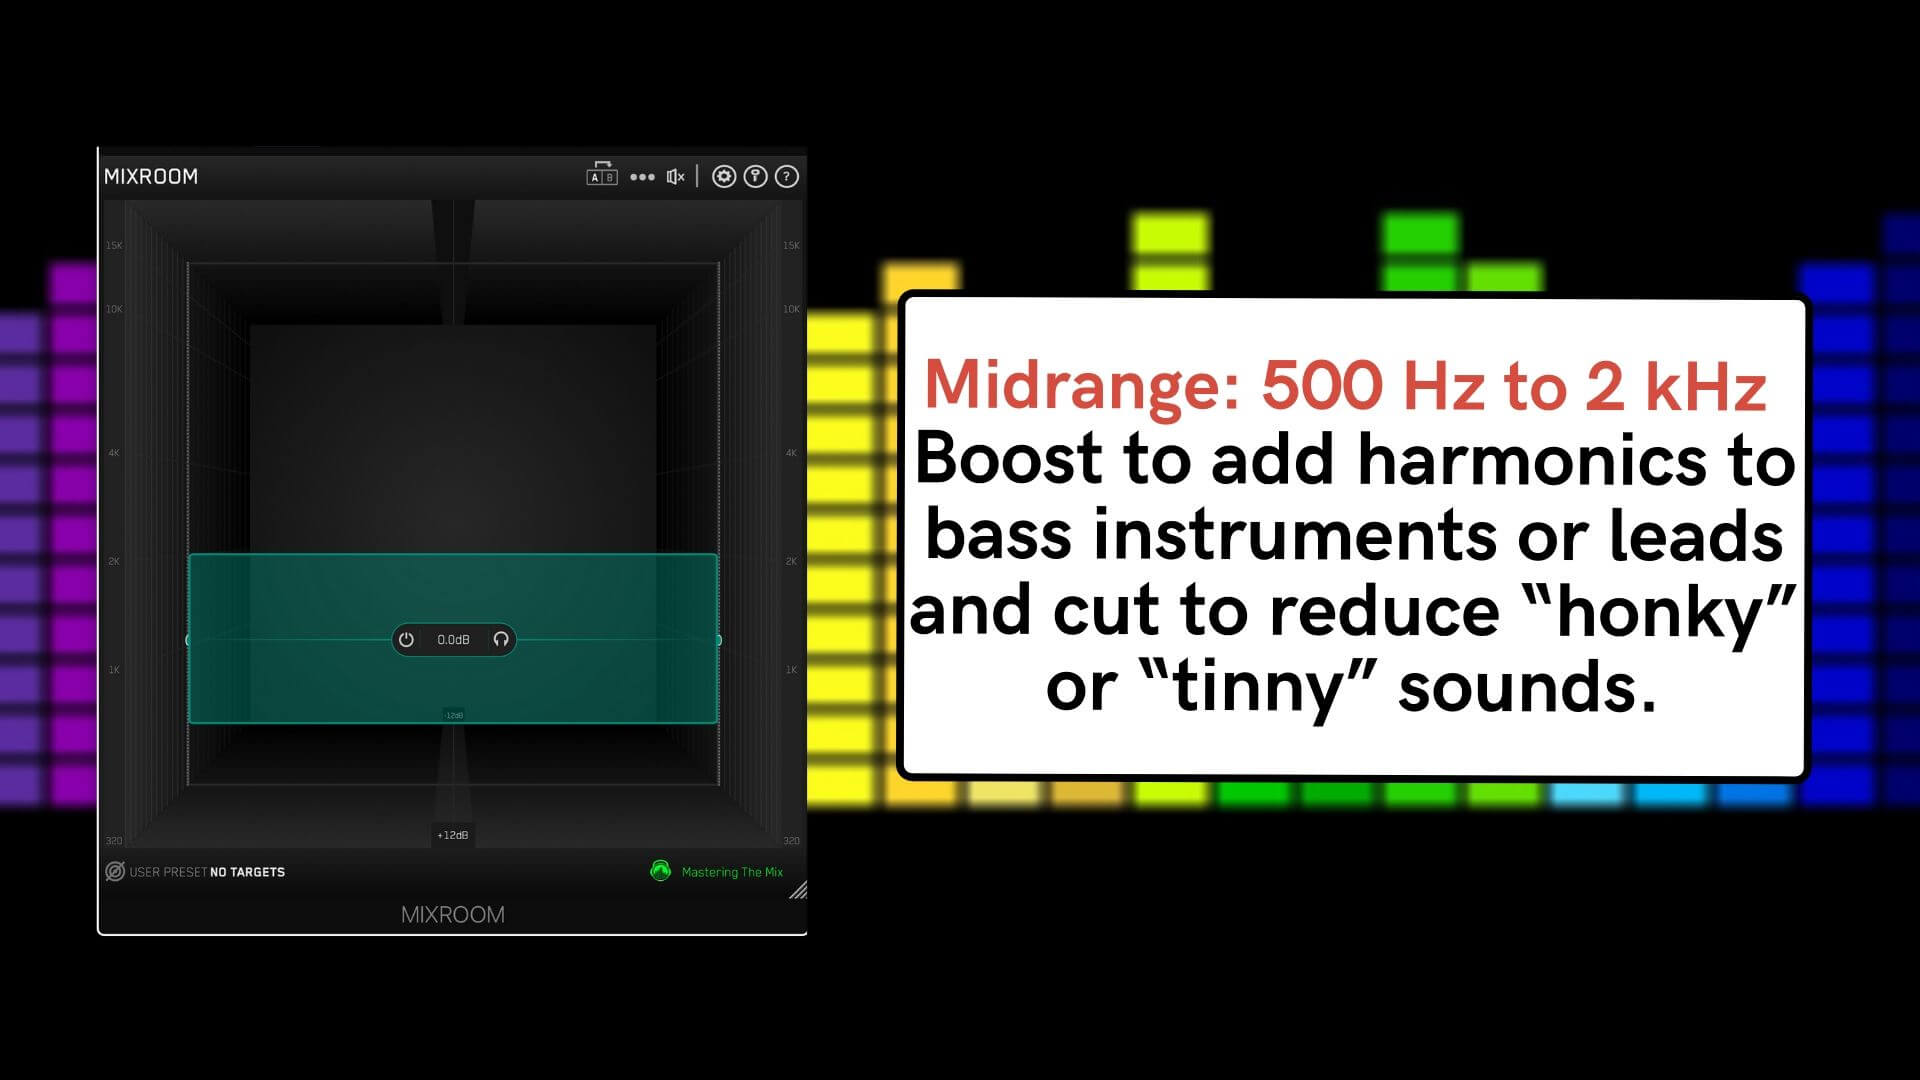 Midrange: 500 Hz to 2 kHz